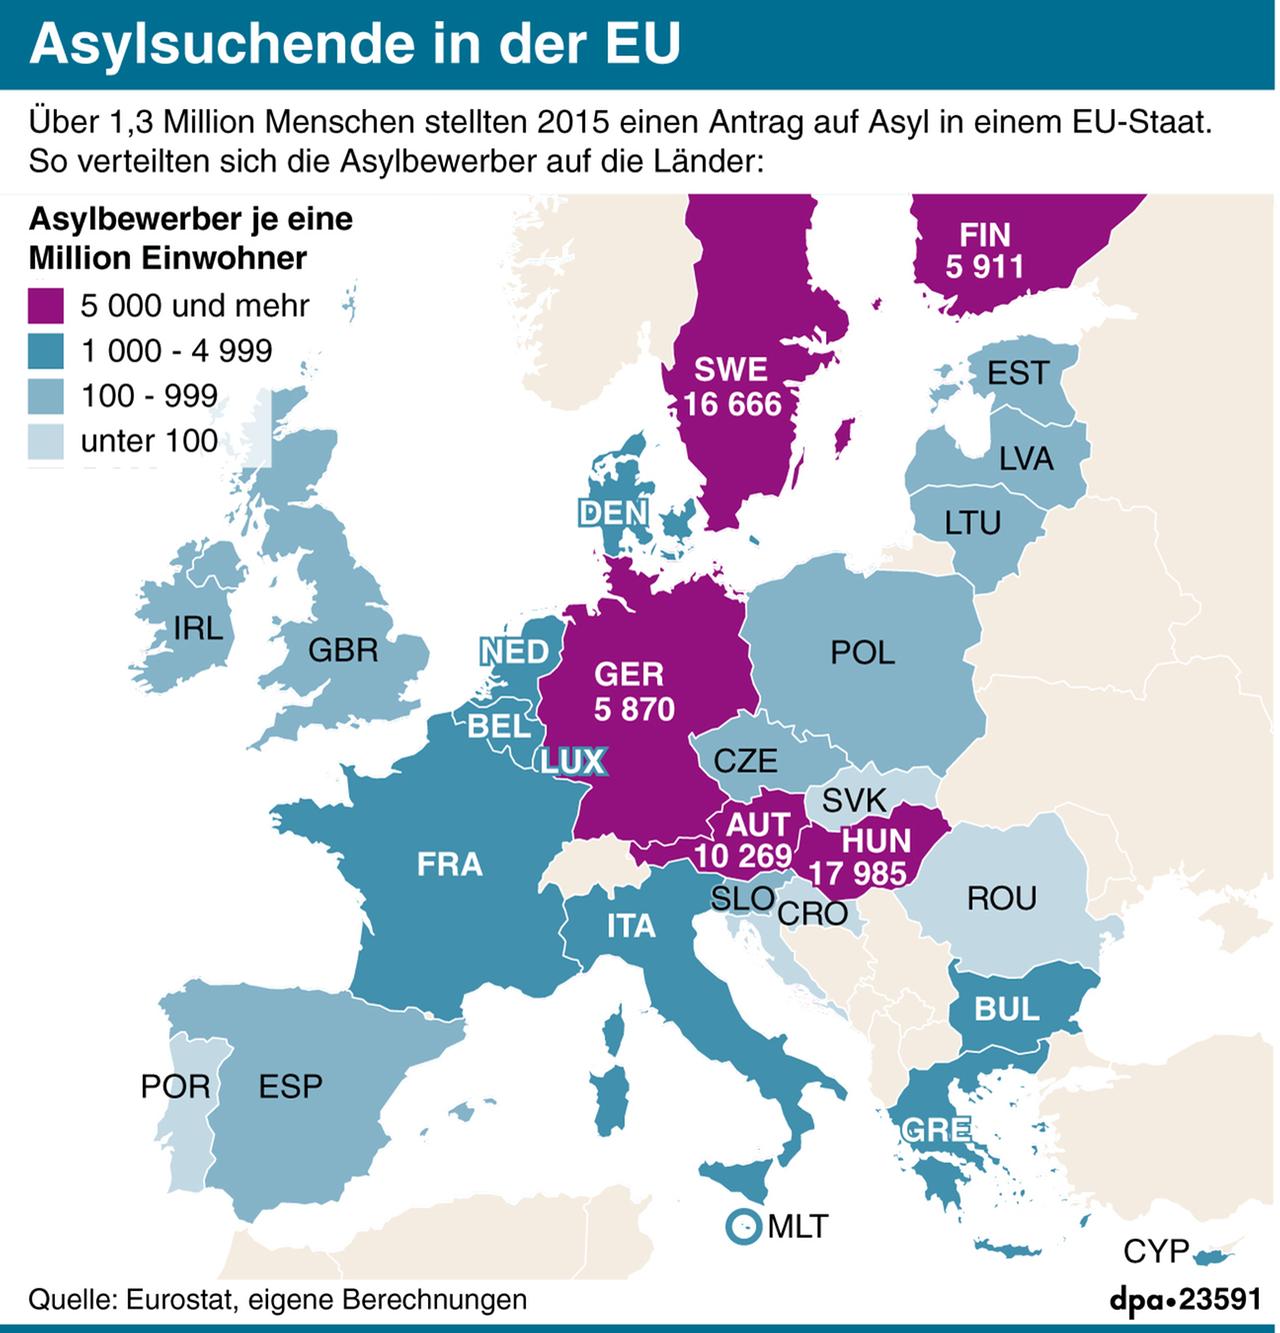 Eine Grafik zu Asylsuchenden in der EU im Jahr 2015 - eine Länderübersicht.